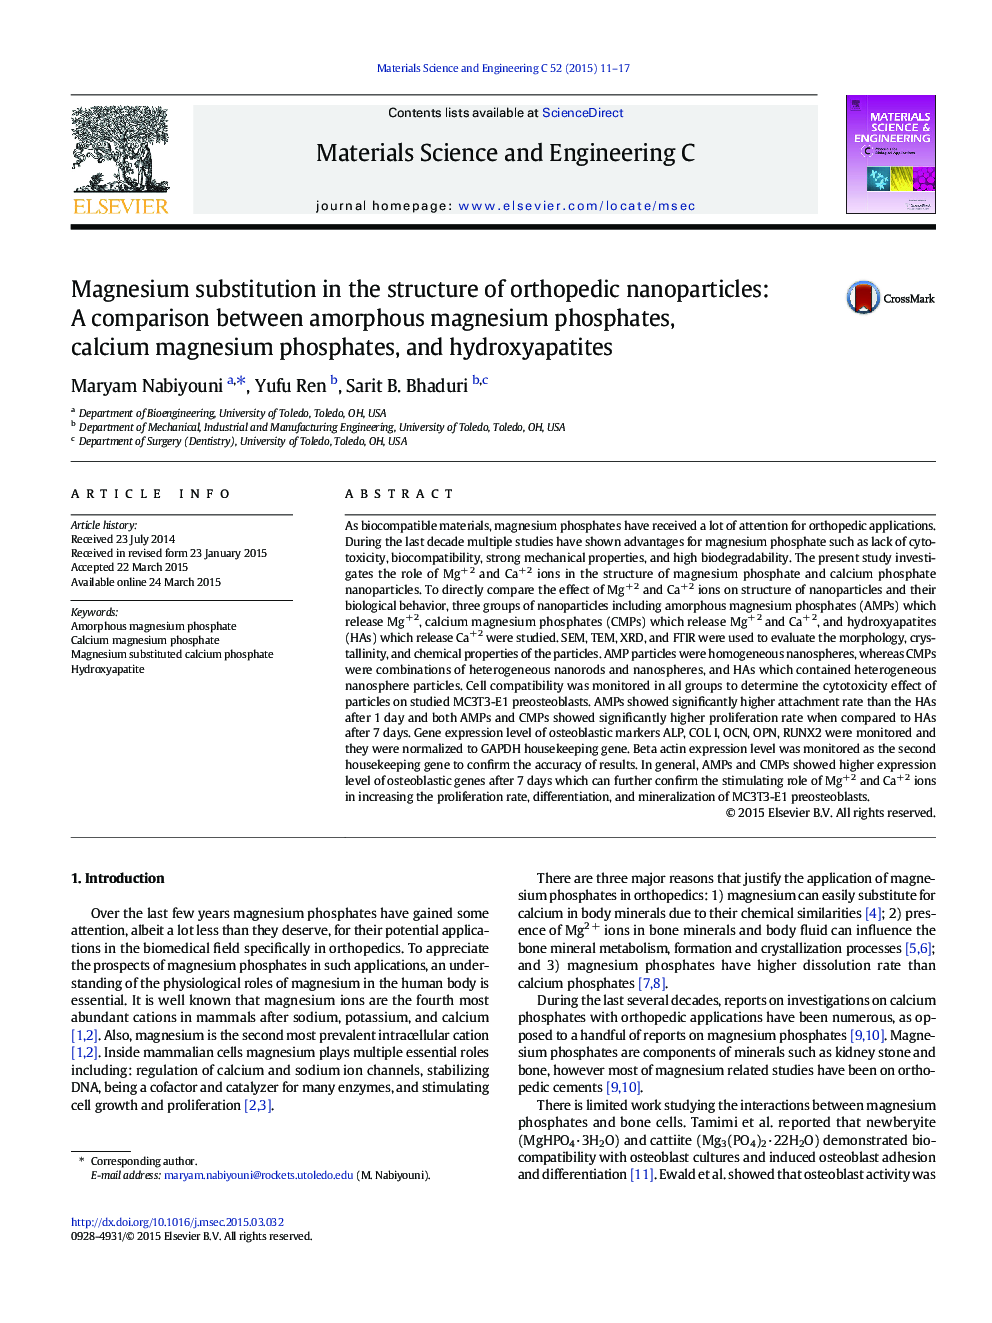 جایگزینی منیزیم در ساختار نانوذرات ارتوپدی: مقایسه بین فسفات منیزیم آمورف، فسفات منیزیم کلسیم و هیدروکسی آپاتیت 